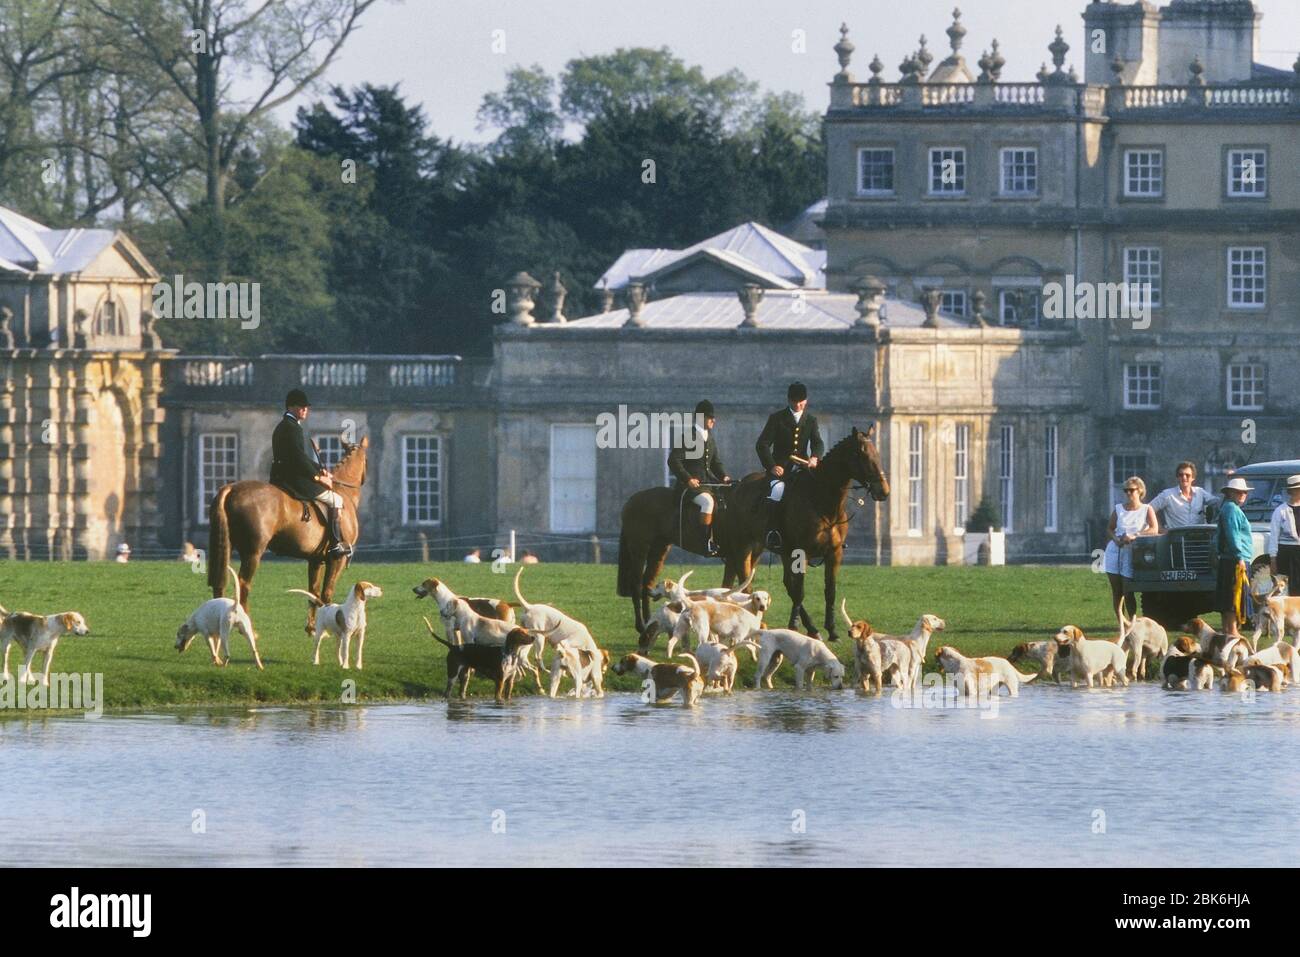 Chasses à cheval avec un paquet de renchounds se rafraîchir dans le lac à la maison de Badminton Estate, Gloucestershire, Angleterre, Royaume-Uni Banque D'Images